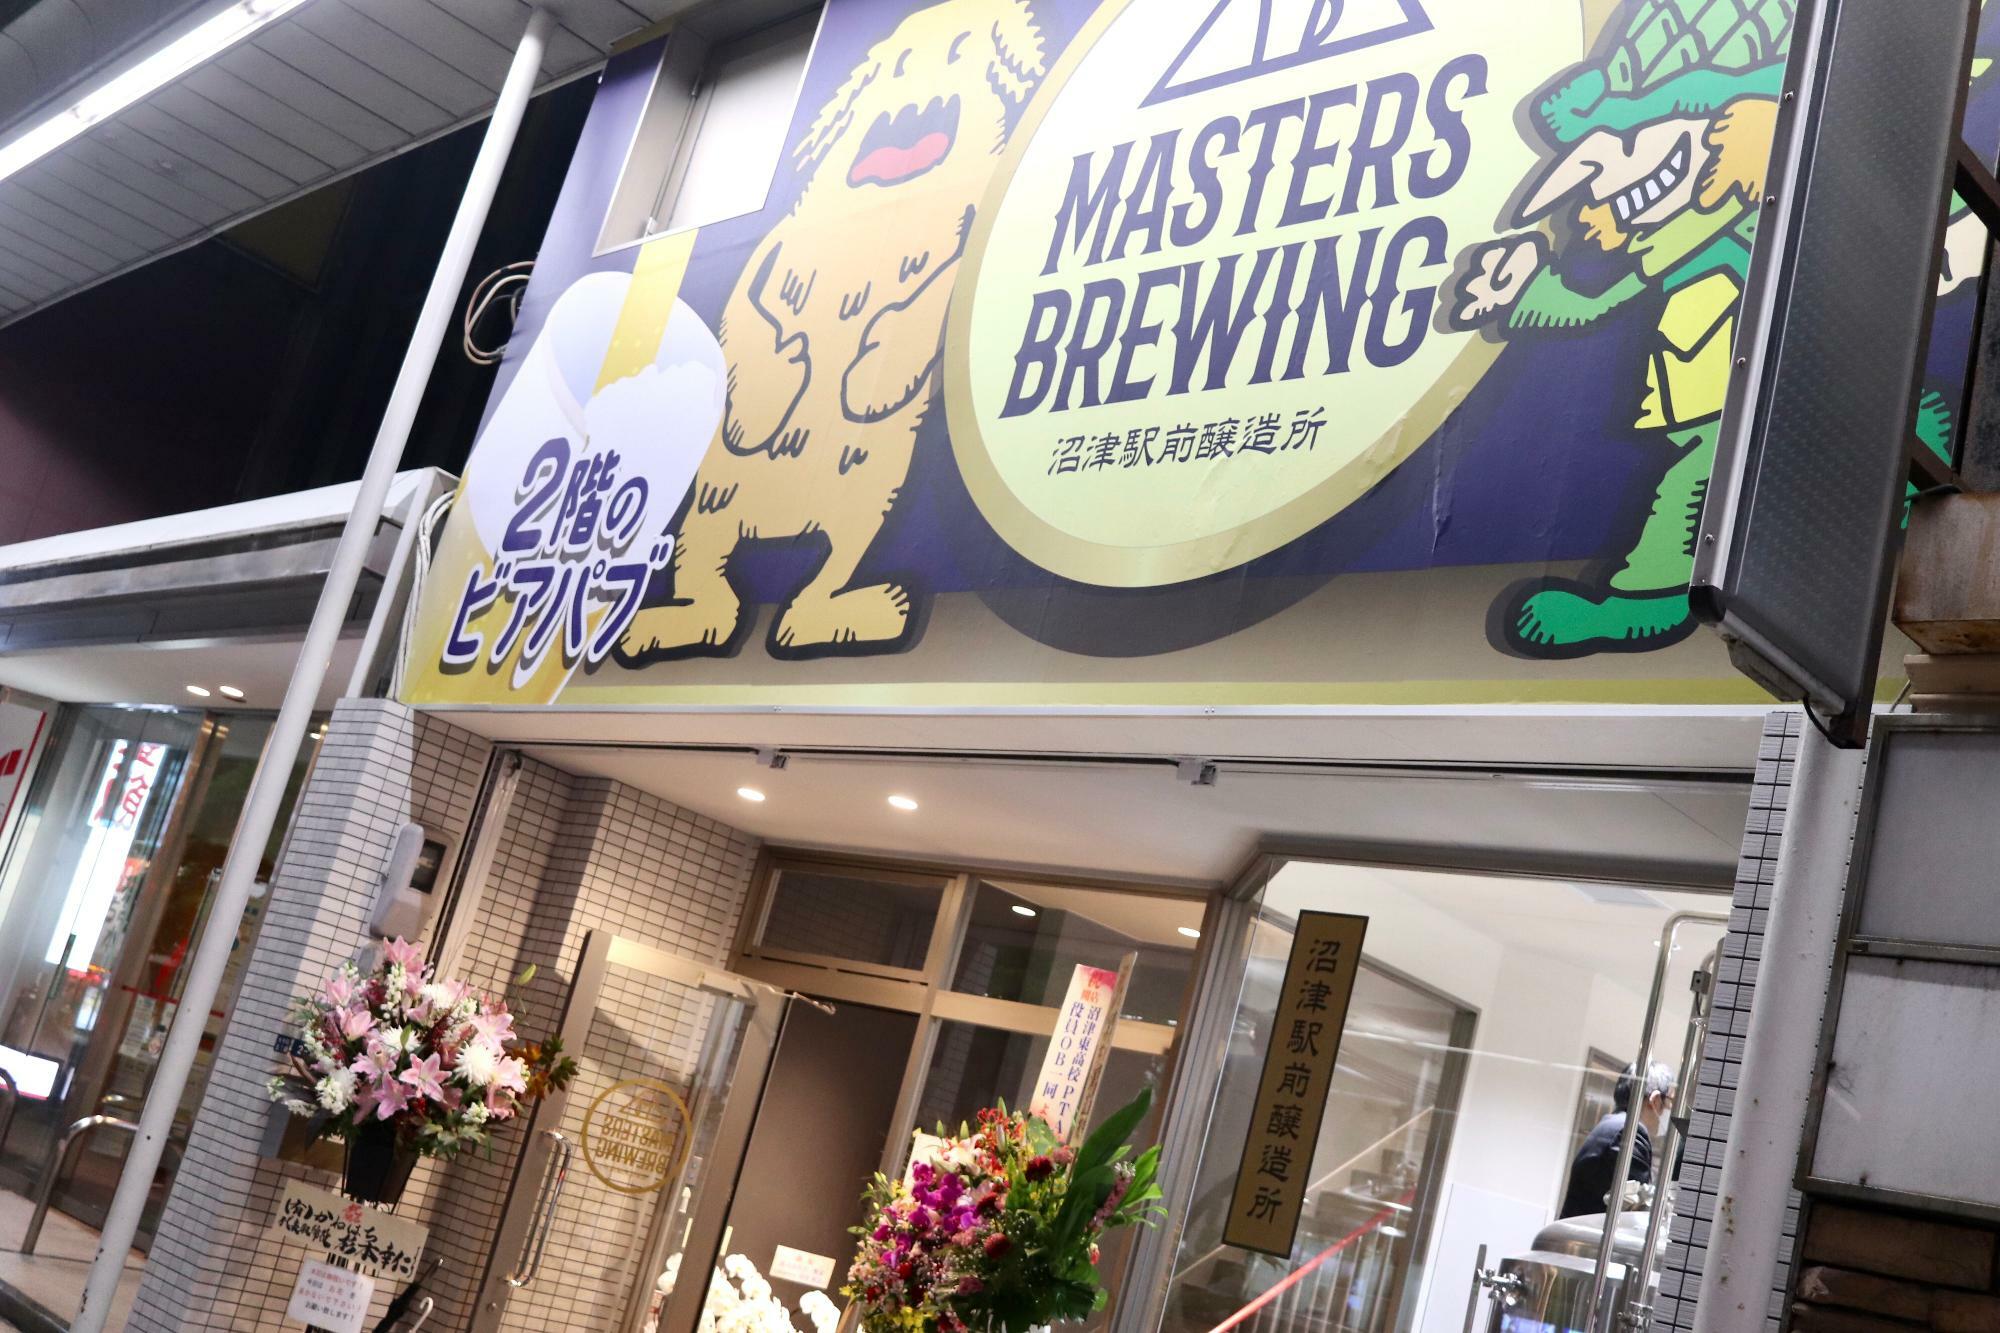 沼津駅南口「Masters Brewing 沼津駅前醸造所」さん